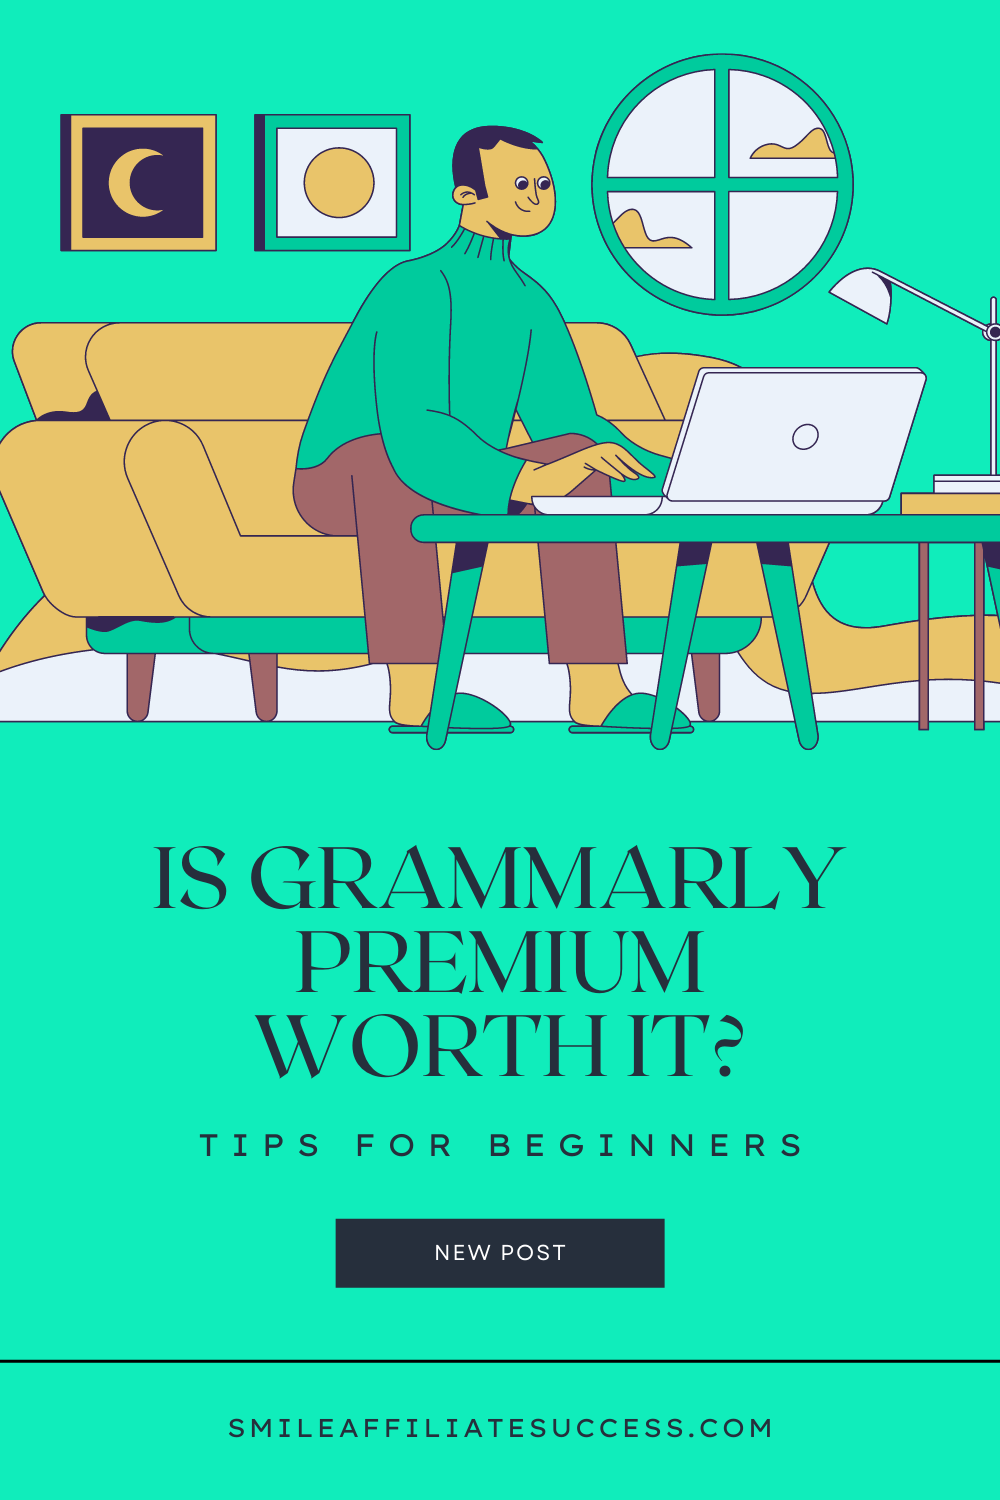 Grammarly Free Vs Premium - Is Grammarly Premium Worth It?